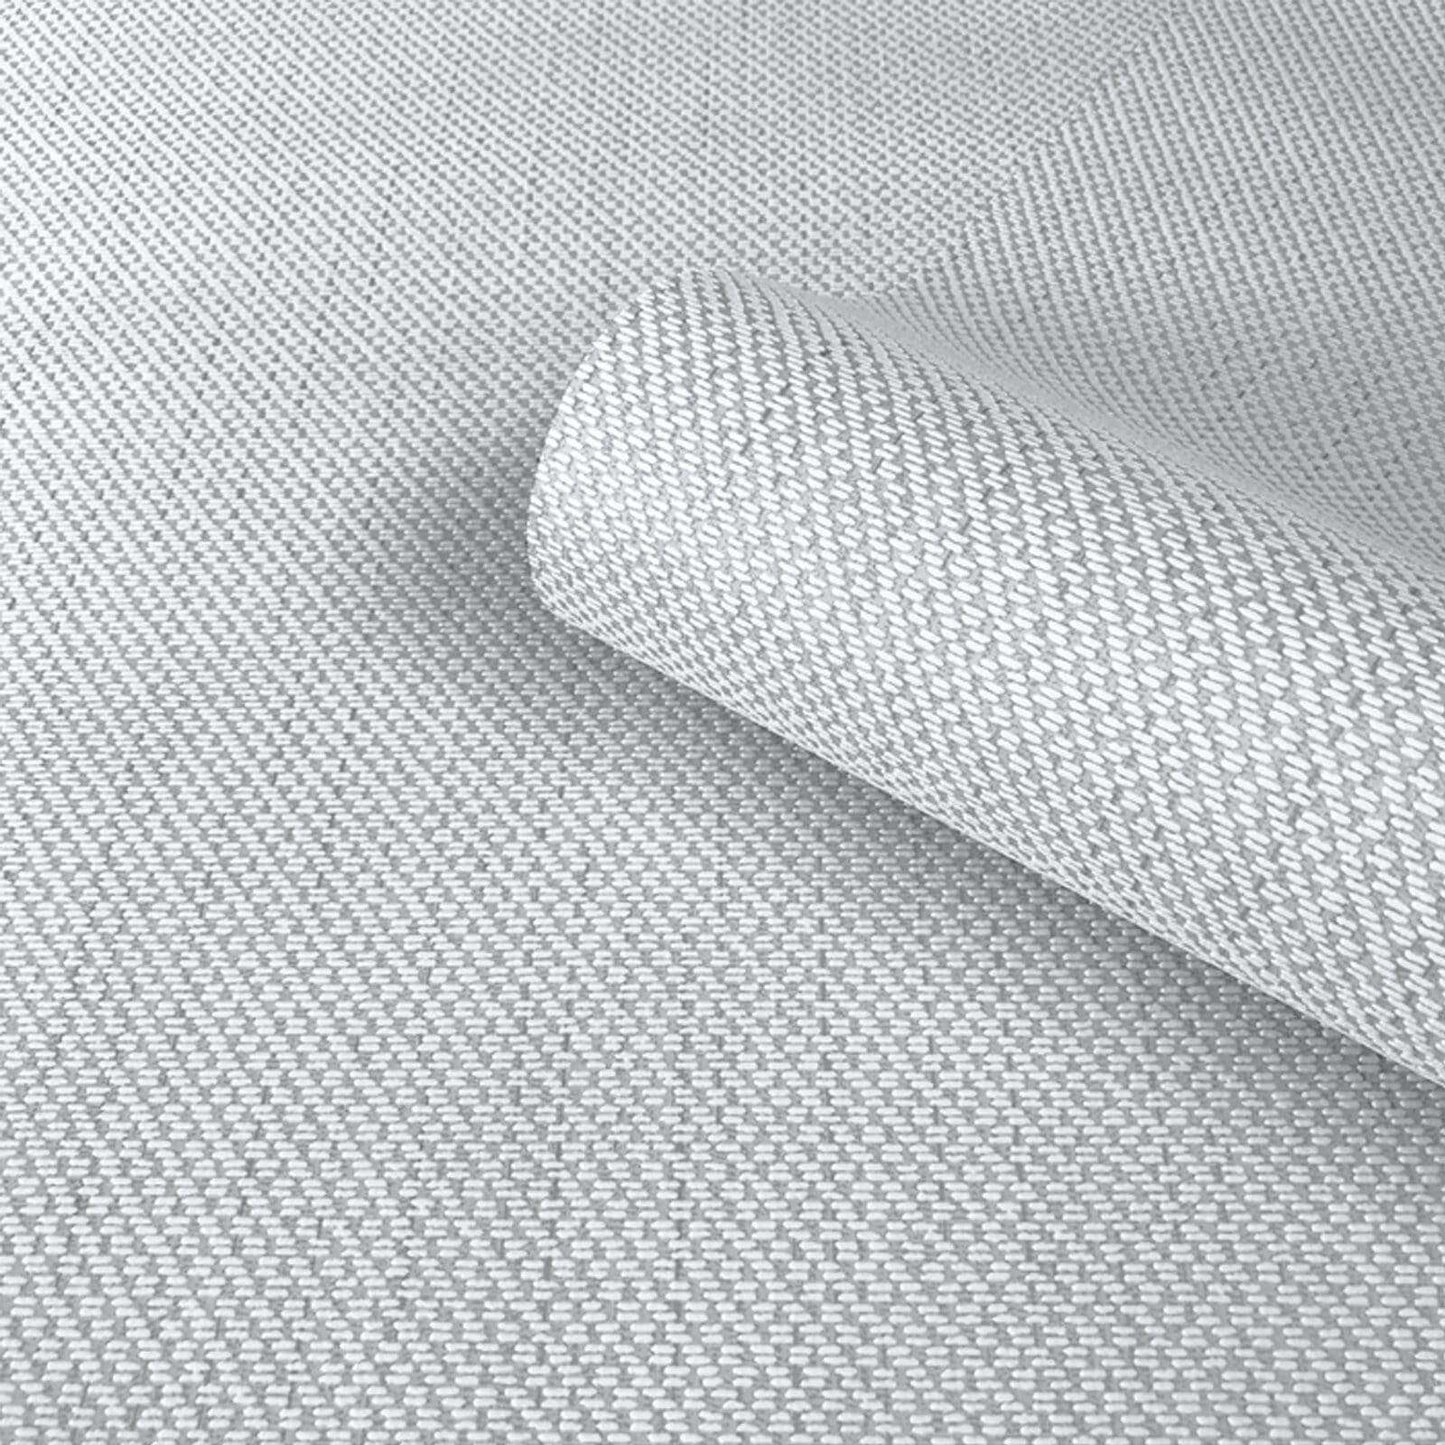 Wallpaper  -  Belgravia Amelie Grey Texture Wallpaper - 3008  -  50154713